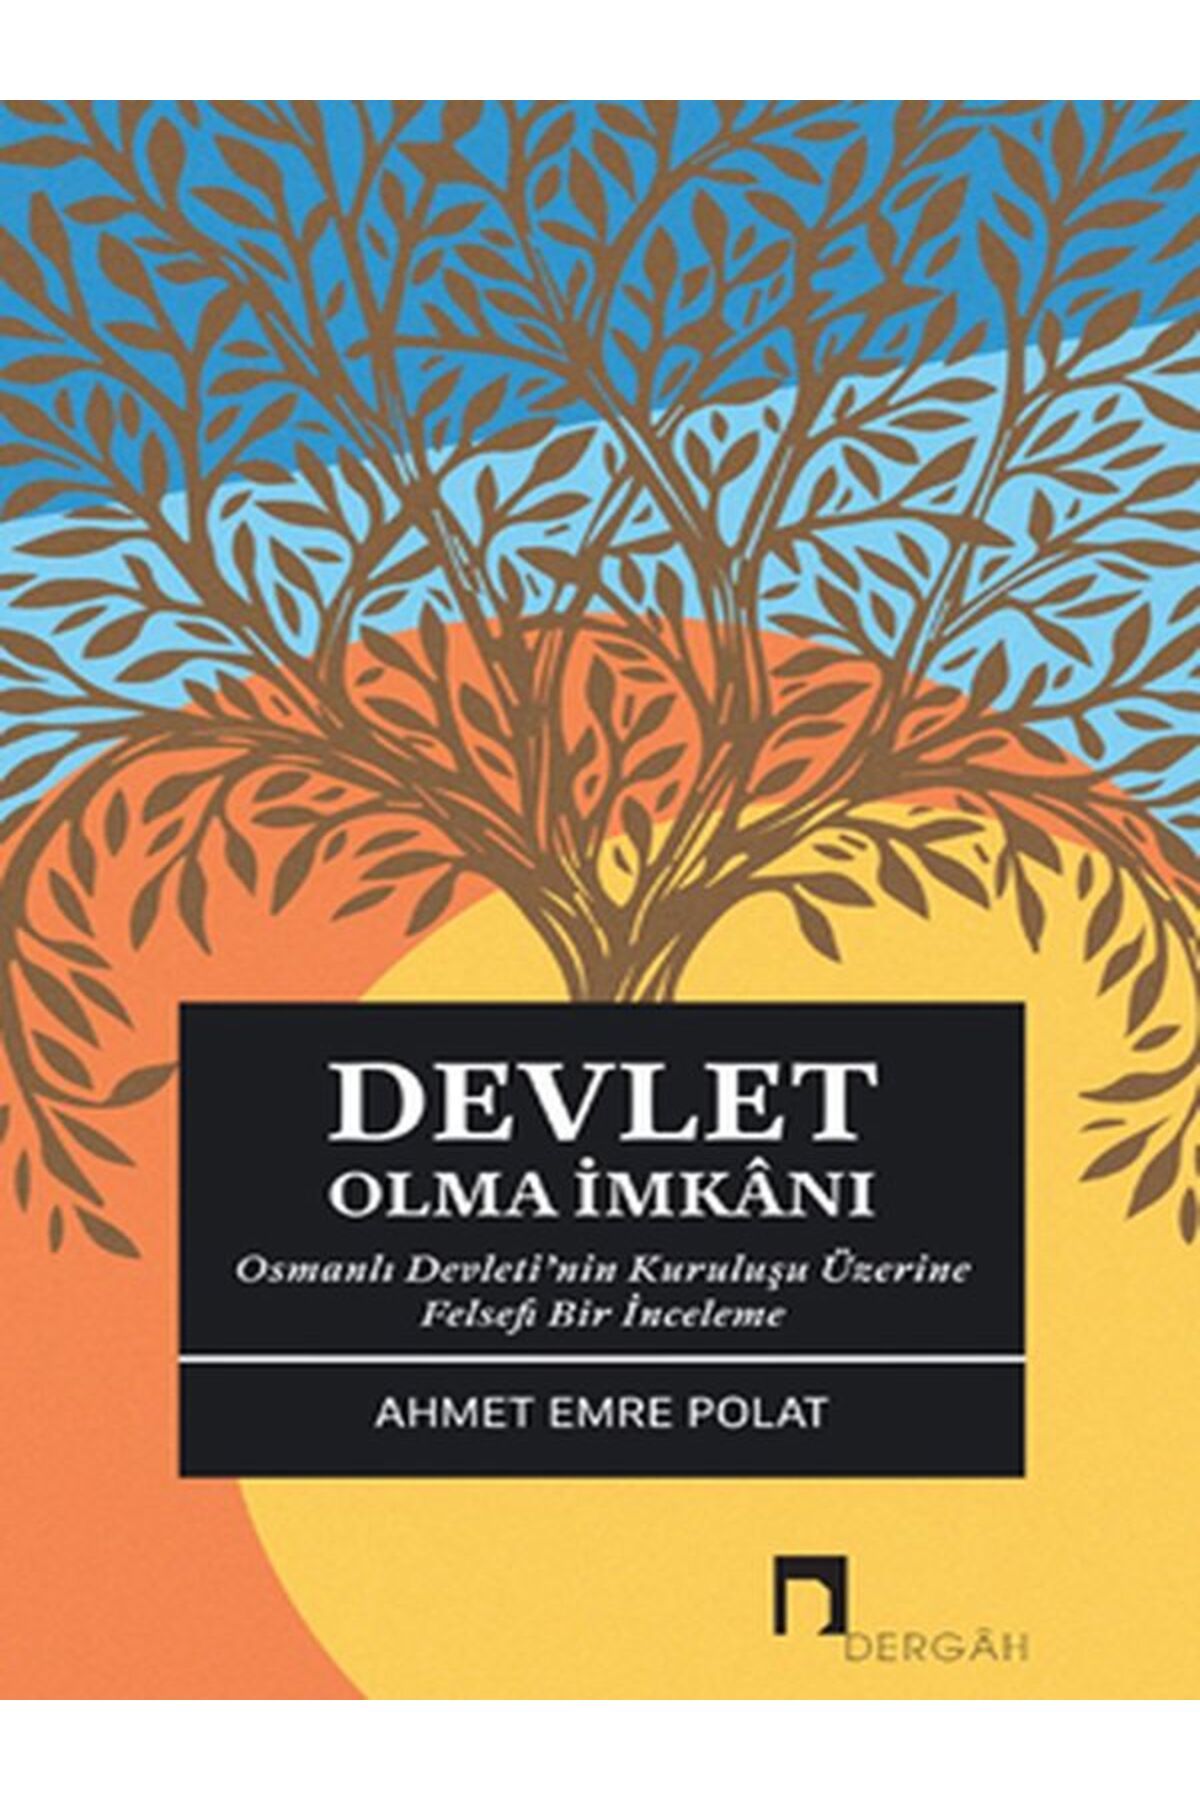 Dergah Yayınları Devlet Olma İmkanı Osmanlı Devleti’nin Kuruluşu Üzerine Felsefi Bir İnceleme